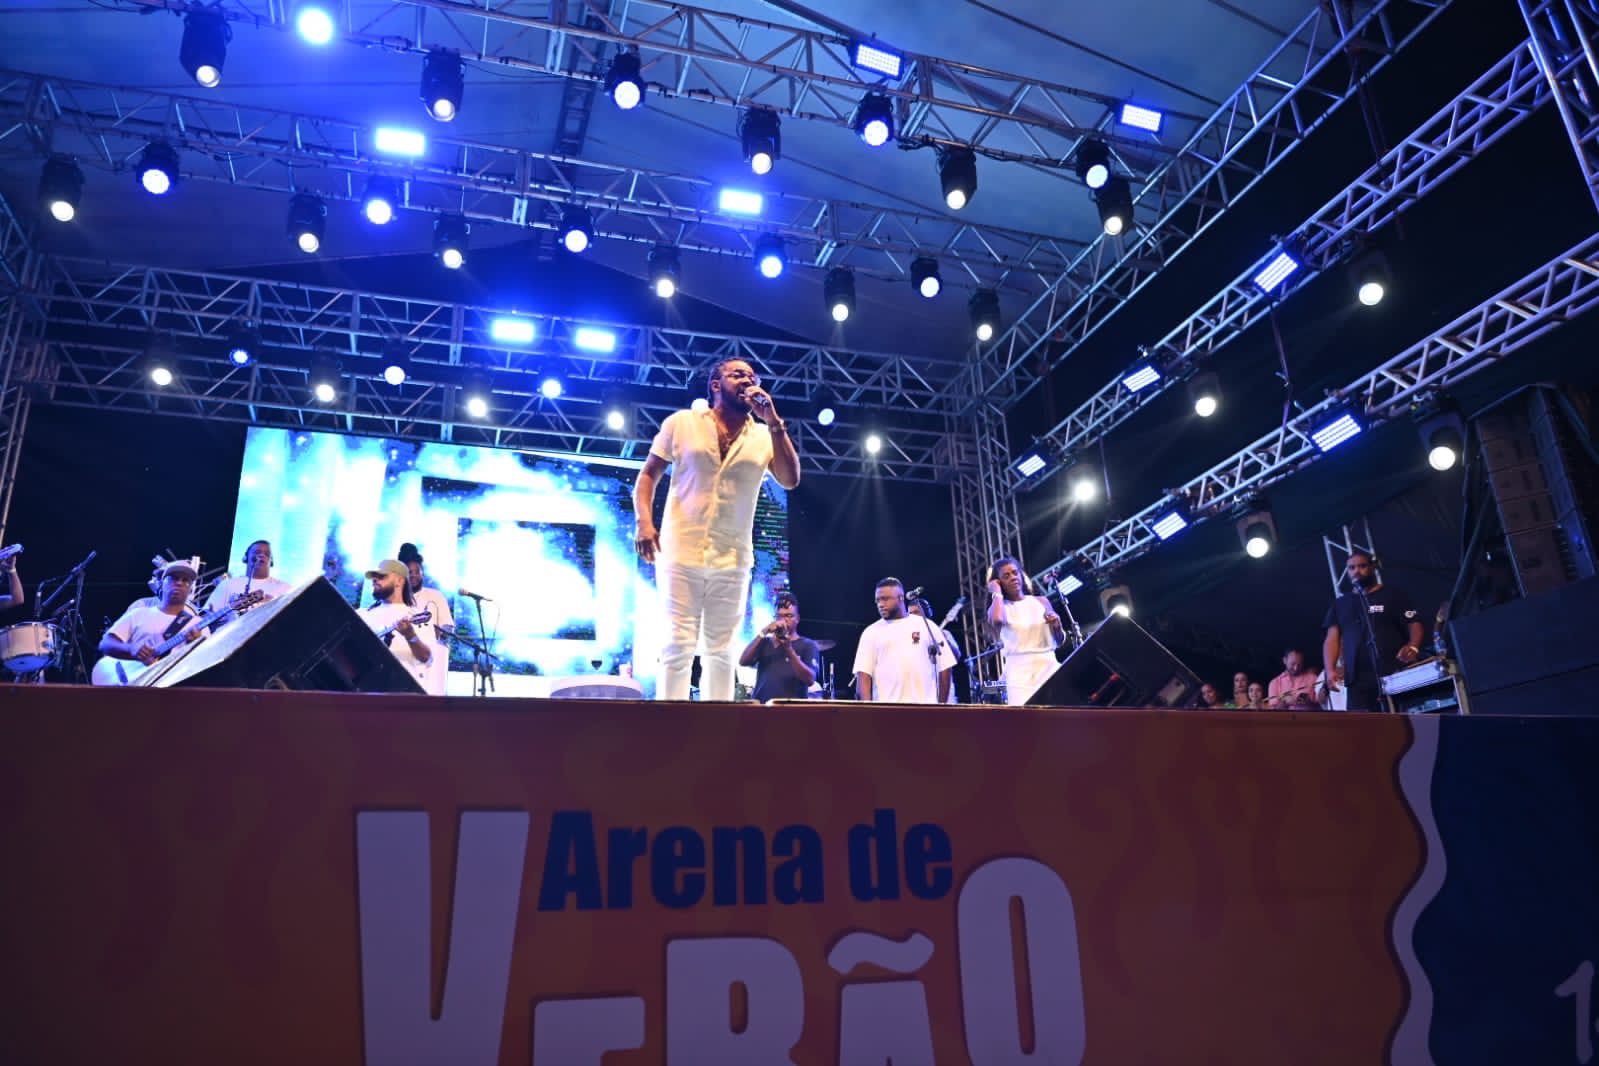 Sexta-feira de Pagode: Xande de Pilares Animaram a Arena de Verão com Muito Samba